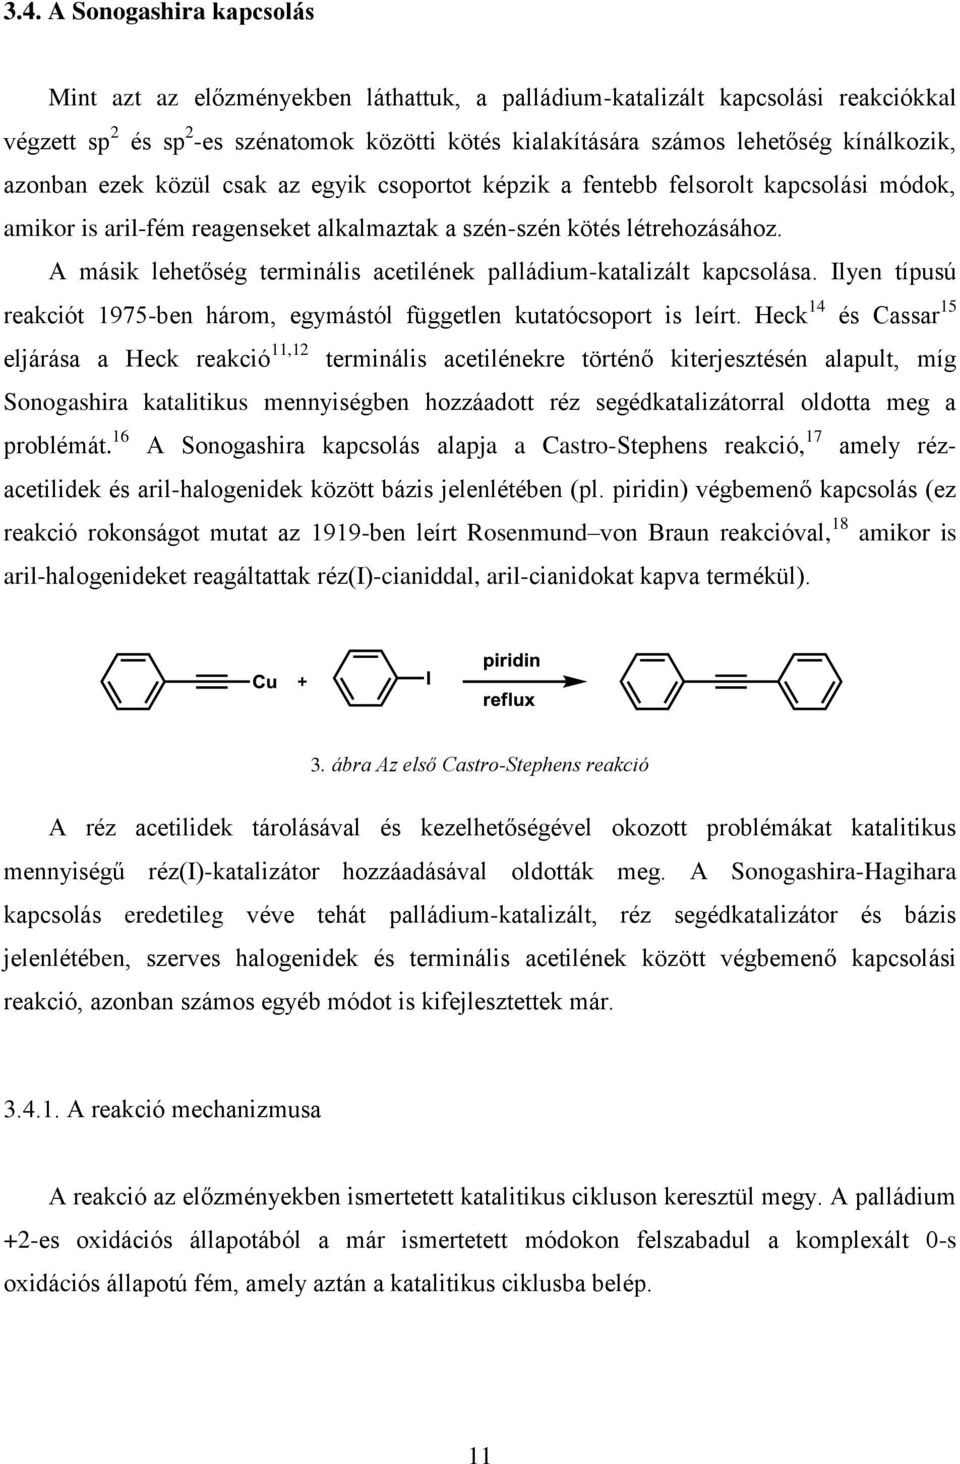 A másik lehetőség terminális acetilének palládium-katalizált kapcsolása. Ilyen típusú reakciót 1975-ben három, egymástól független kutatócsoport is leírt.